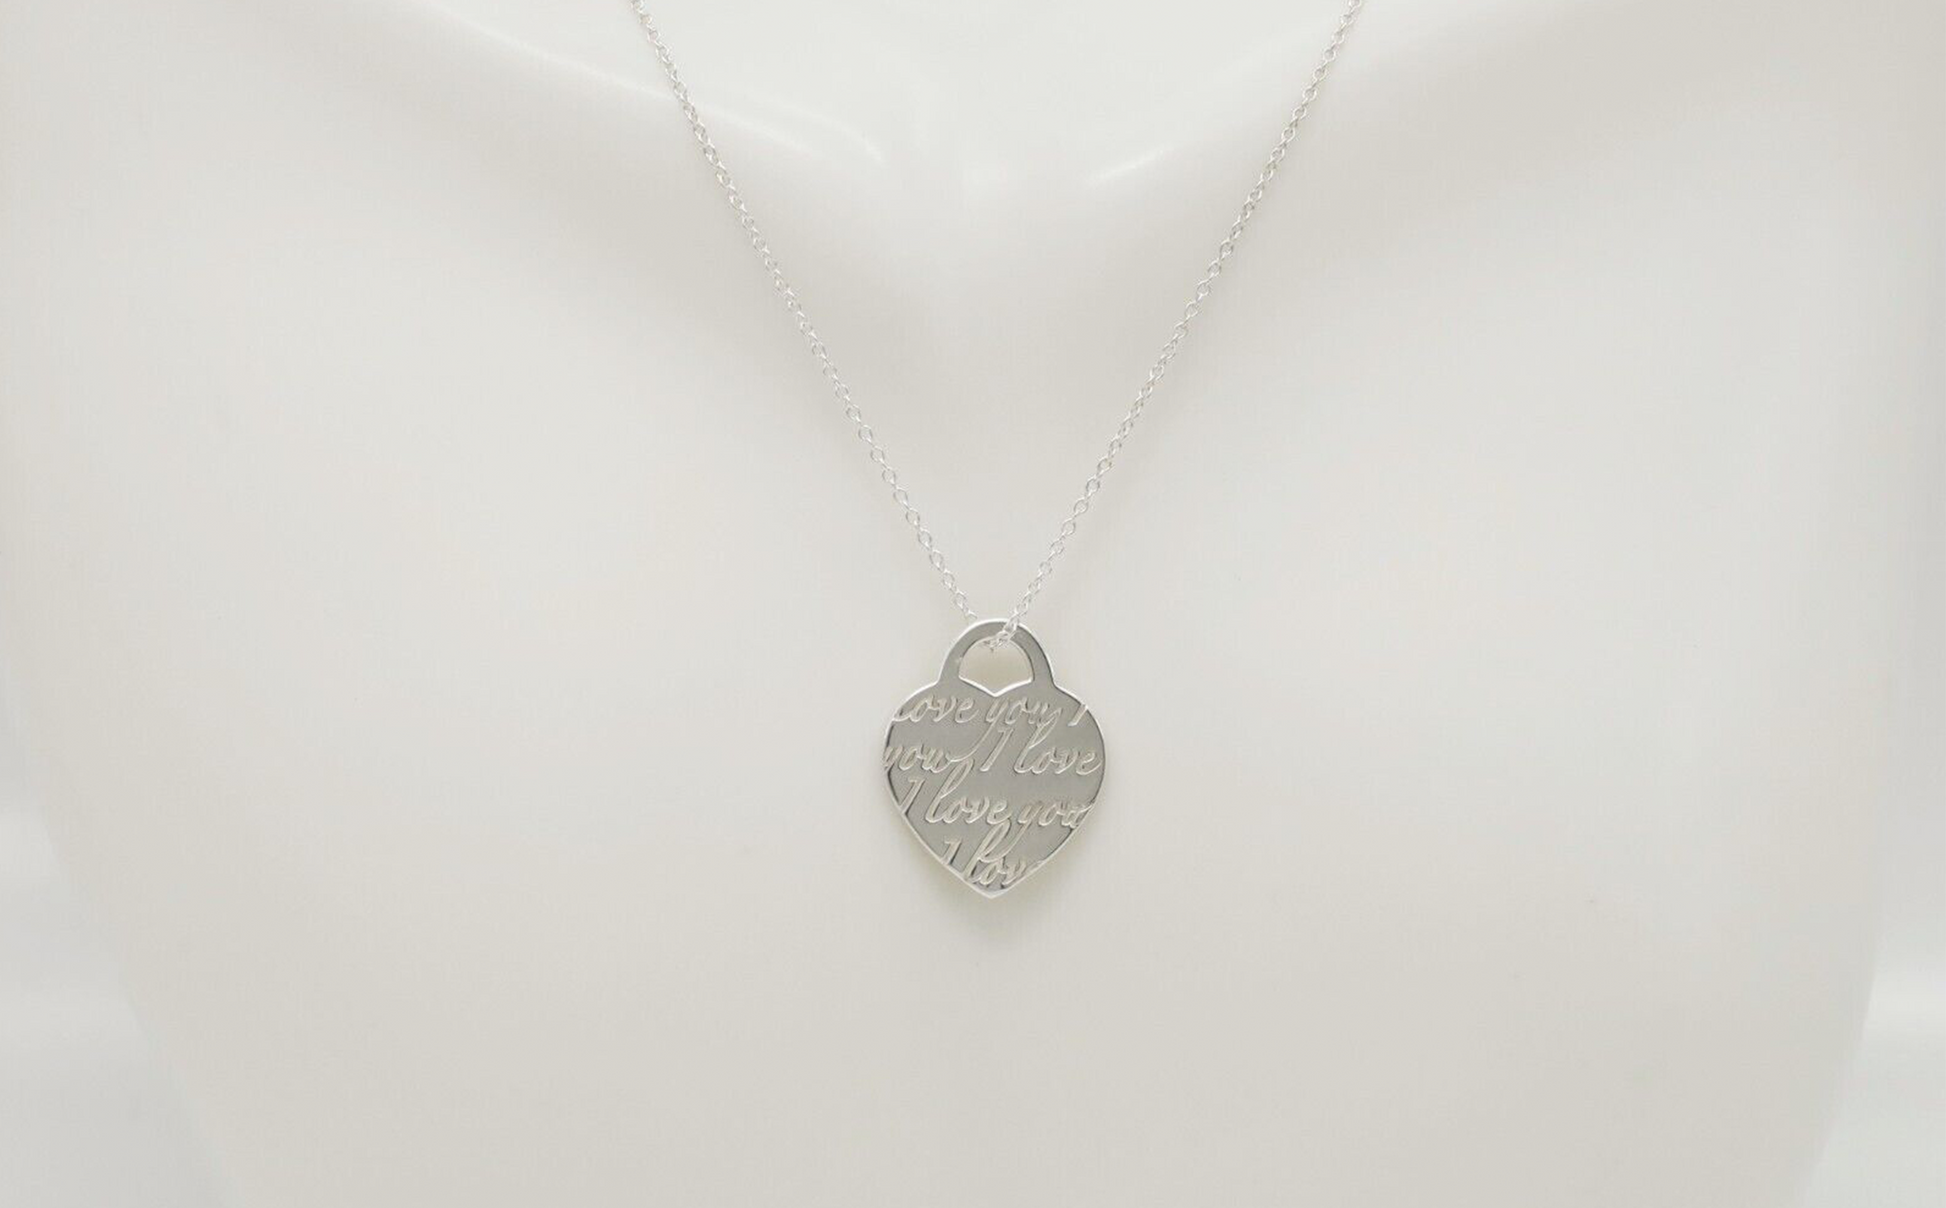 Tiffany & Co Silver Heart Love Signature Bead Pendant Necklace in Box Pouch  Rare | eBay